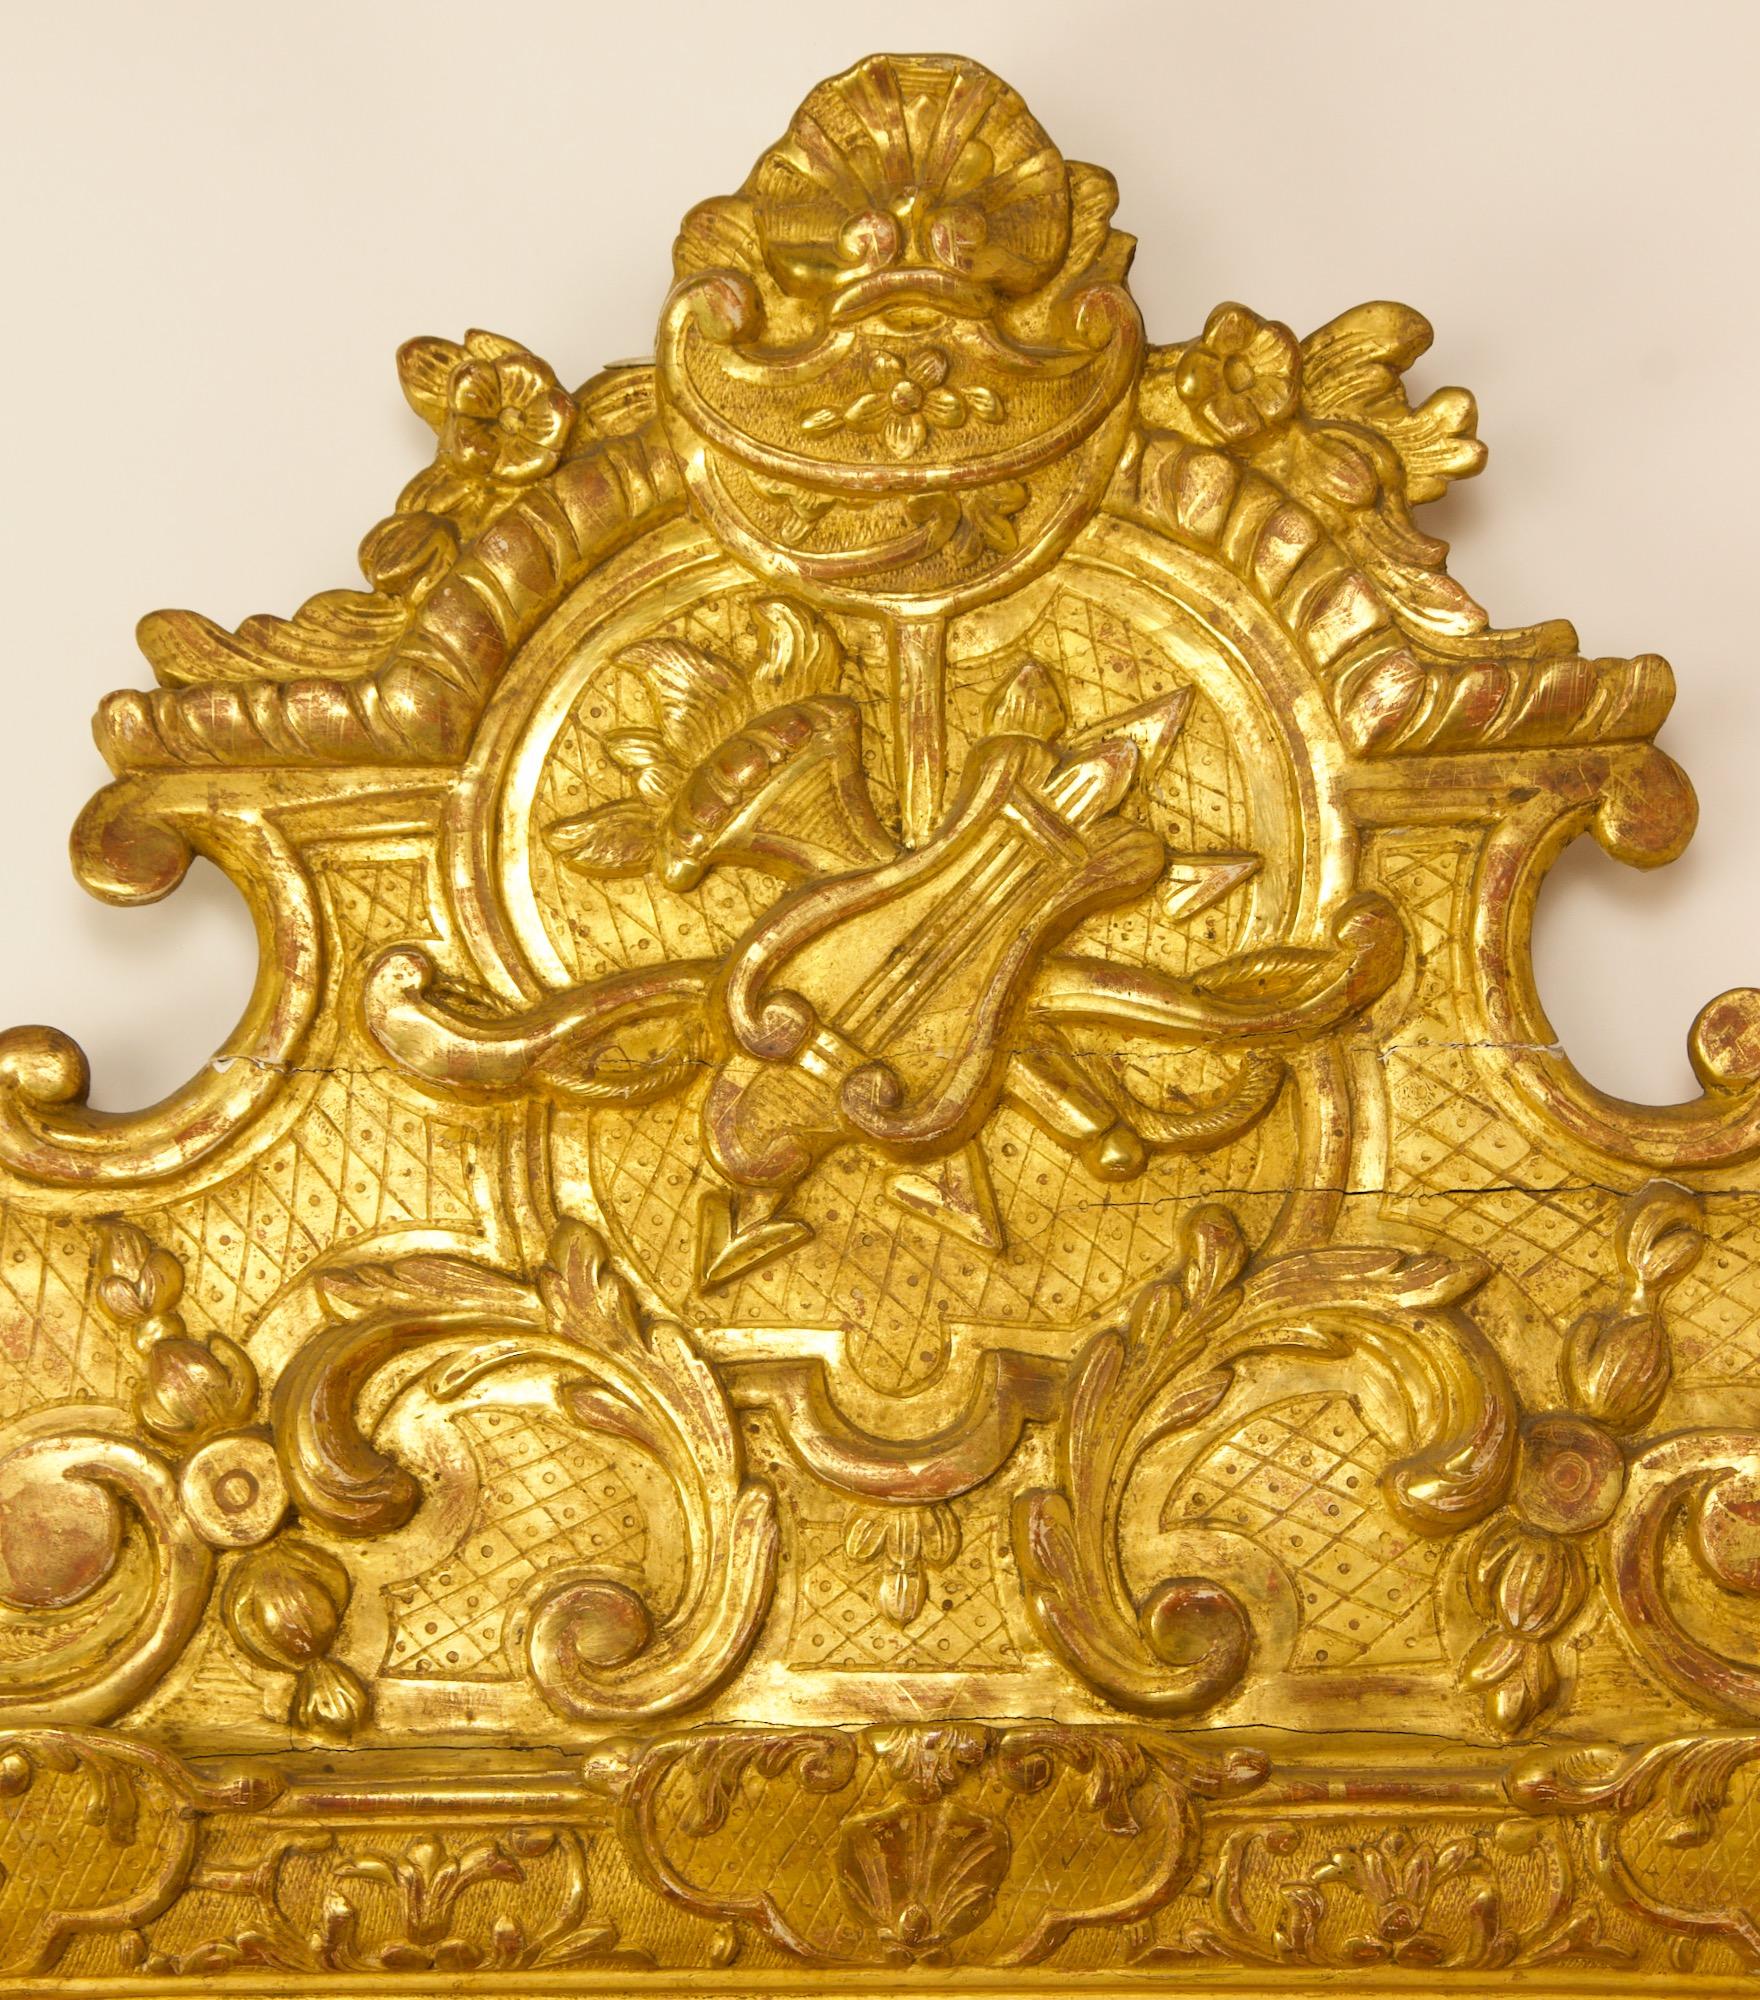 Miroir en bois doré du début du XVIIIe siècle, symbole d'amour de la Régence française.

Miroir en bois doré du début du XVIIIe siècle de style Régence avec une plaque rectangulaire (17,72 po x 13,38 po) dans un cadre conforme orné d'une bordure